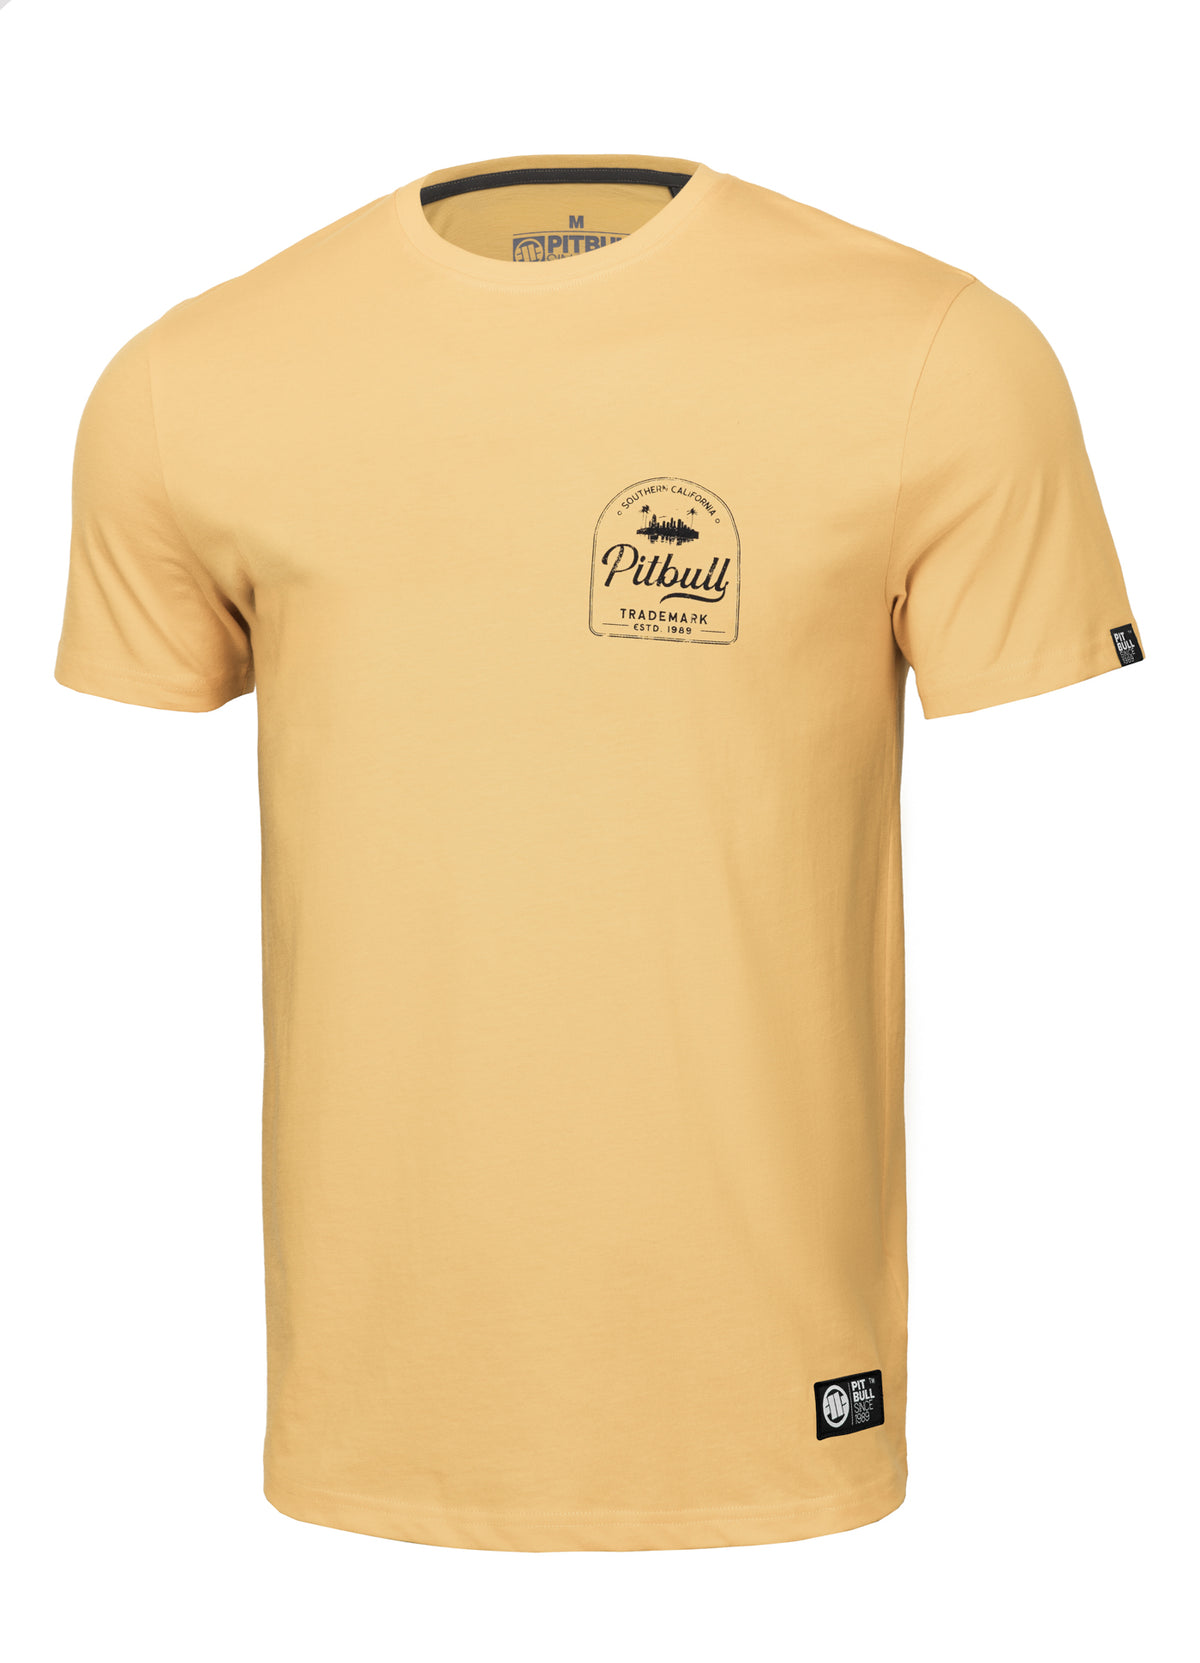 PITBULL SO CAL Yellow T-shirt - Pitbullstore.eu